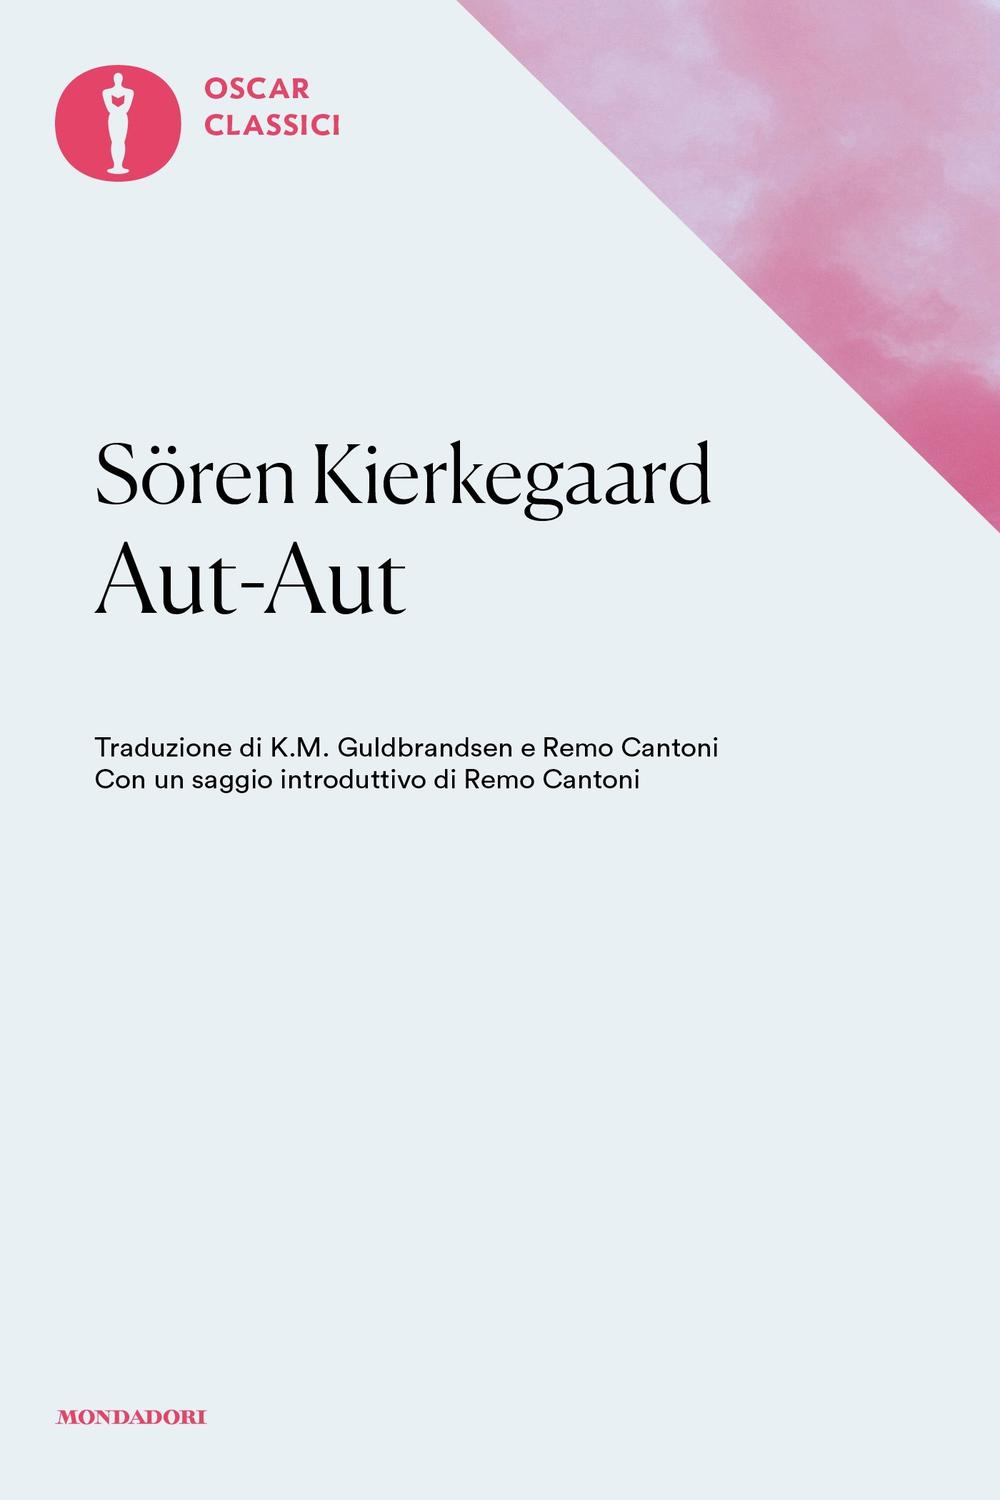 Aut-Aut - Sören Kierkegaard